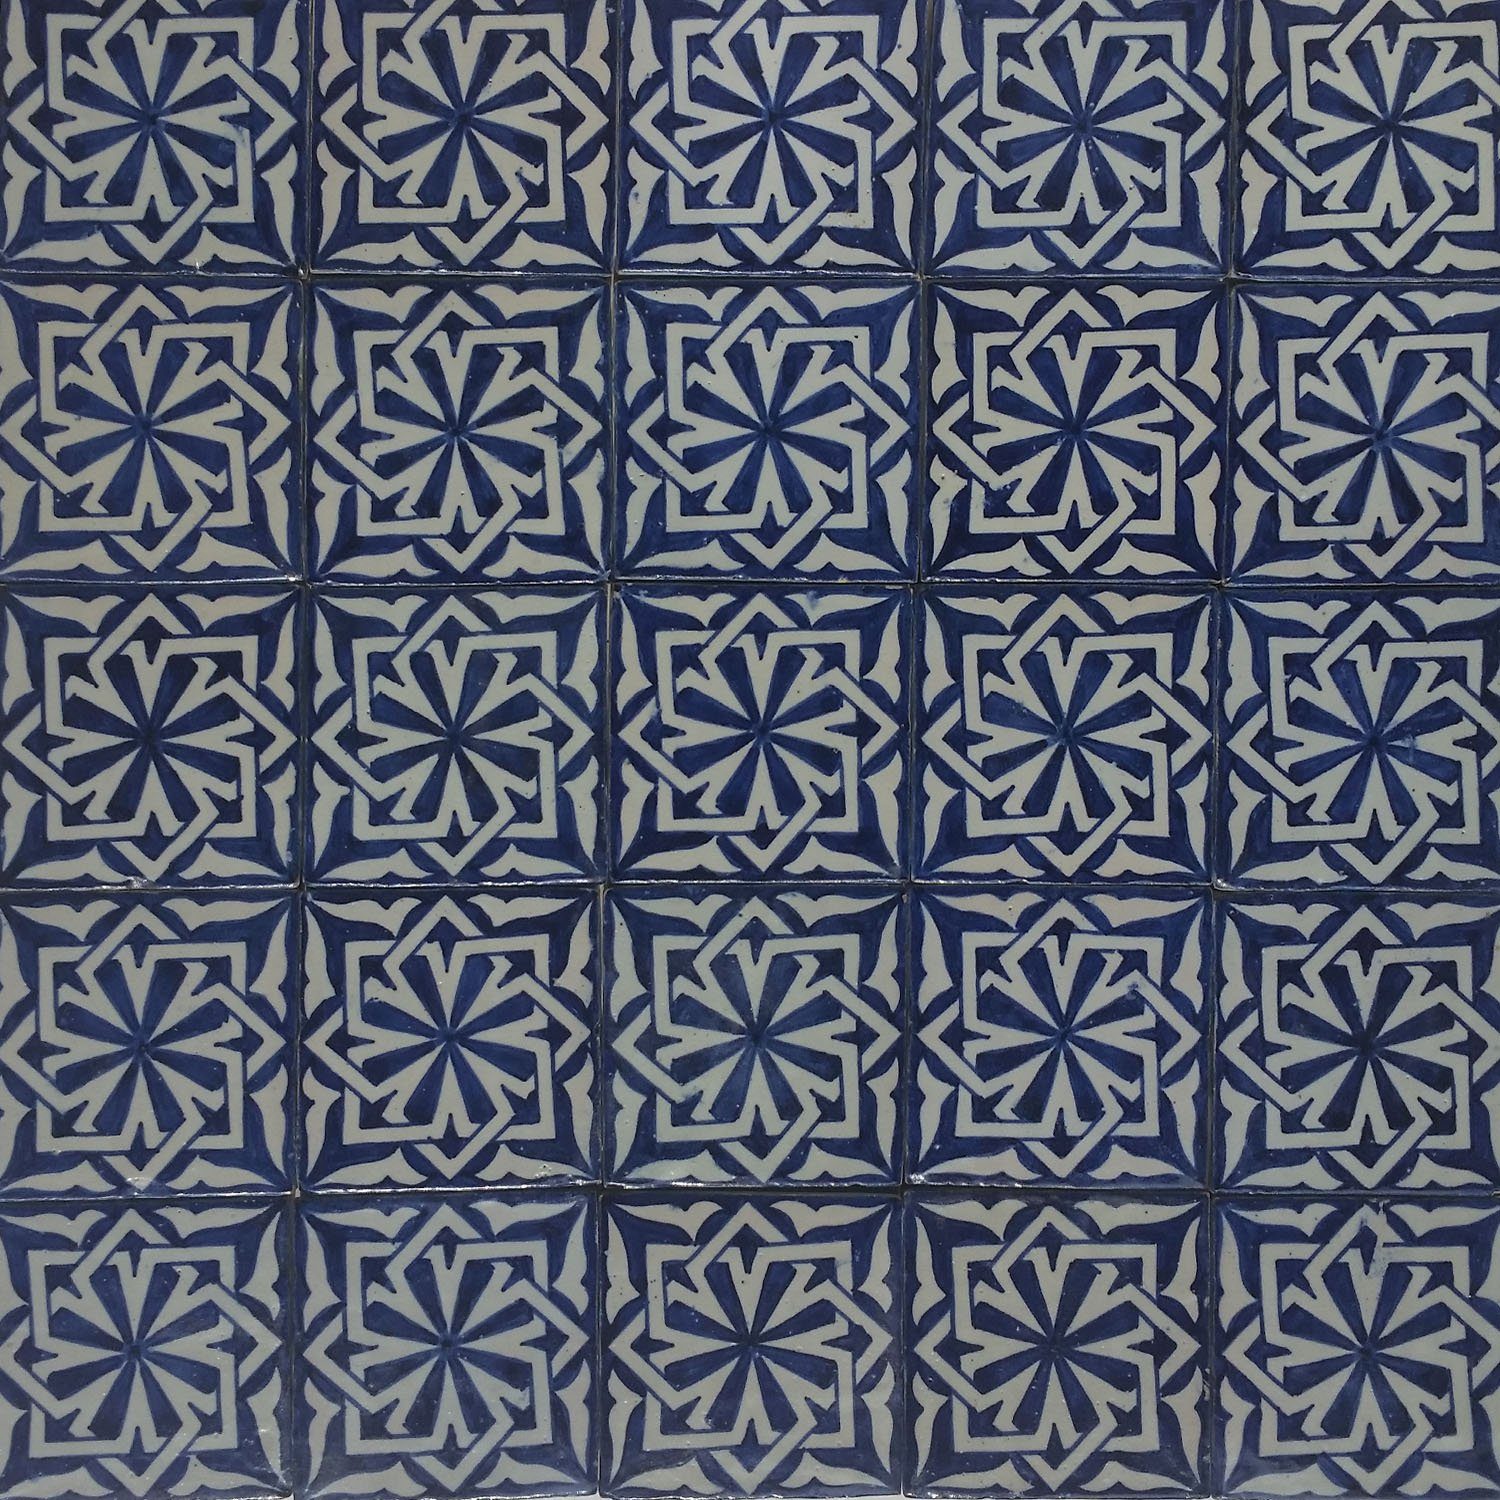 Wandfliese Fliese Badezimmer, handbemalte Marokkanische Wandfliese Moro Blau weiß aus Casa schöne Küche blau 10x10 Dusche Hala HBF8025, orientalische Marokko für cm Weiß Kunsthandwerk Keramikfliese